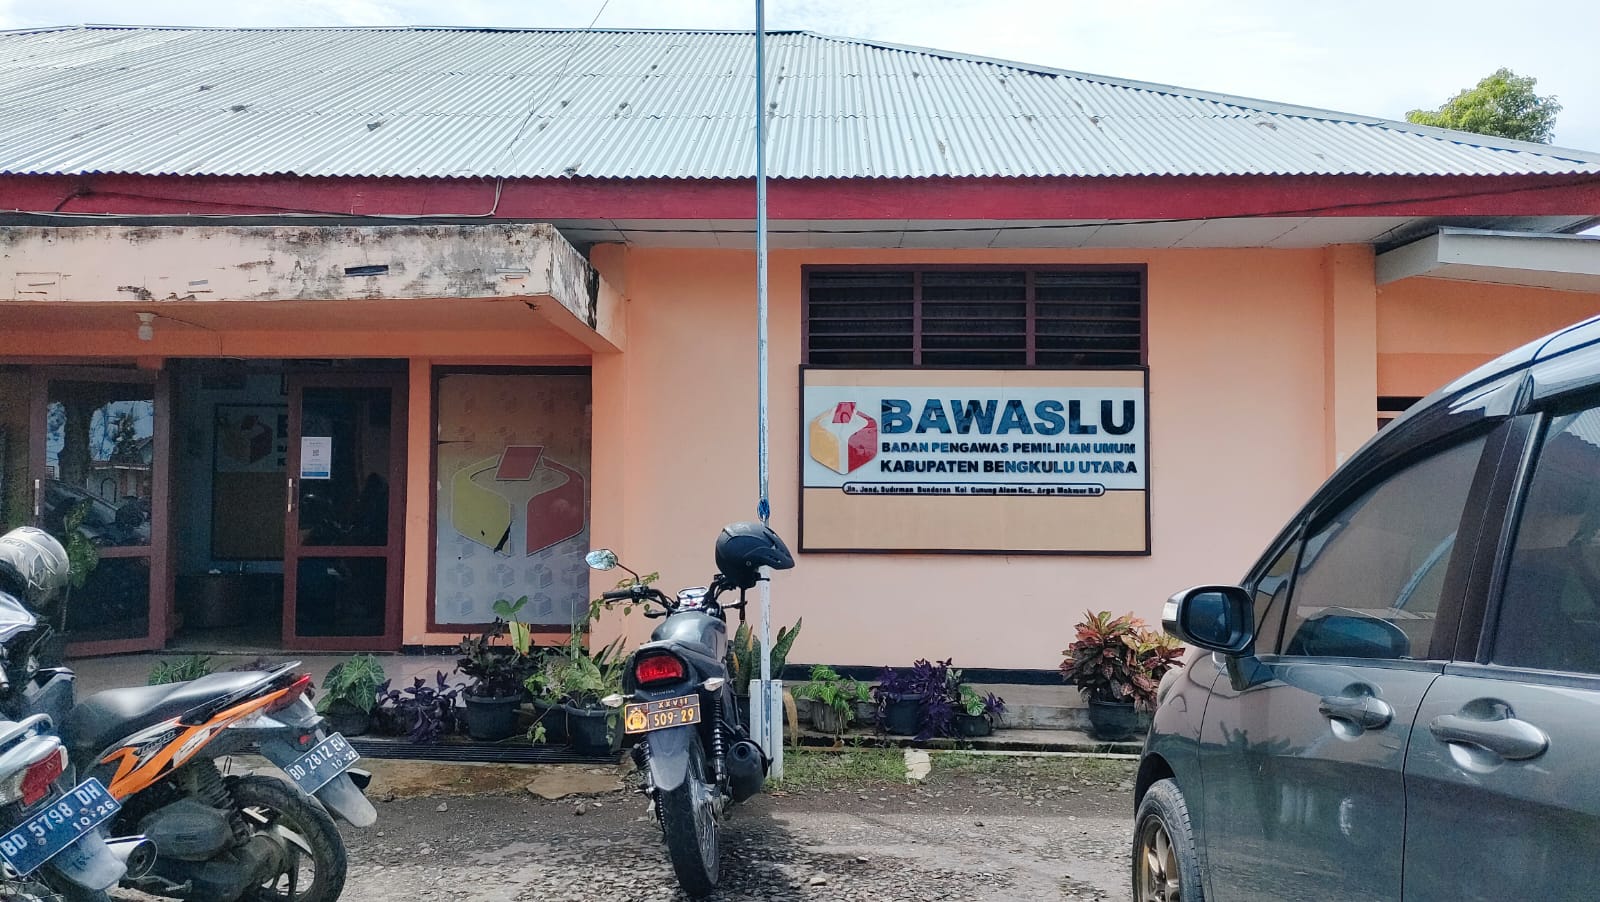 Soal Rangkap Jabatan, Bawaslu : Perangkat Desa Wajib Mundur